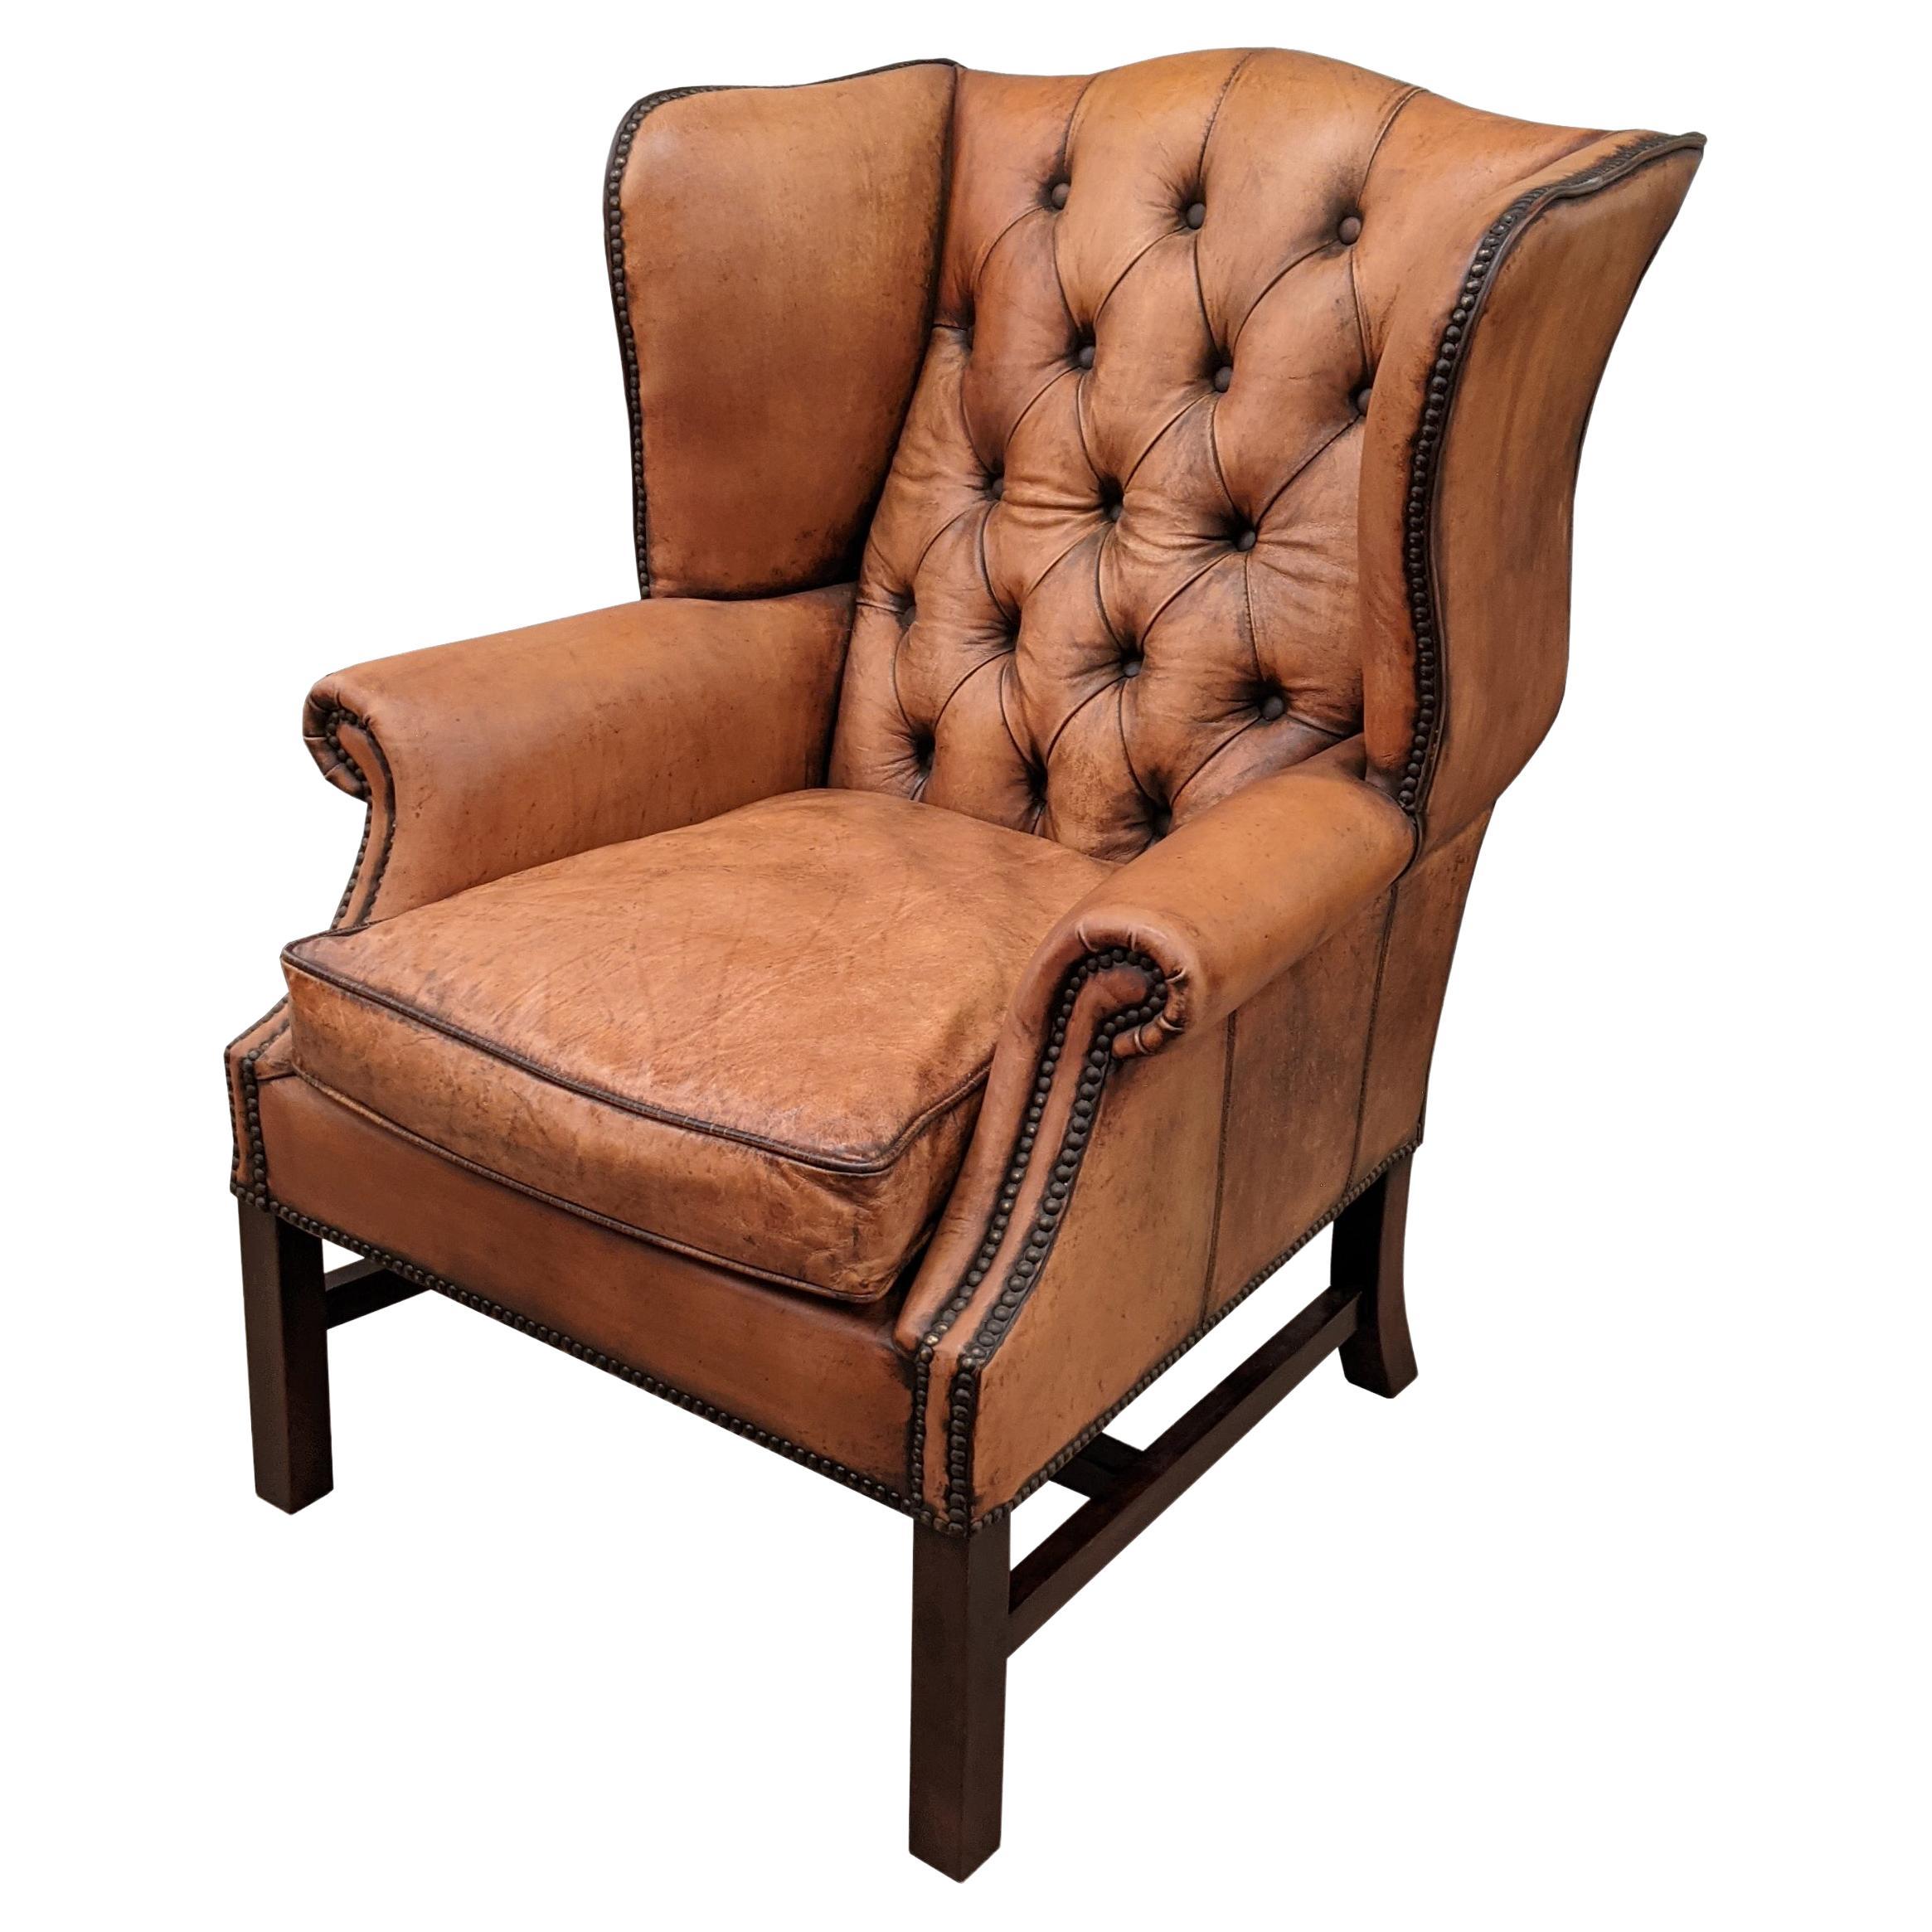 Quatre chaises à dossier touffeté de style anglais, en cuir vieilli à la main